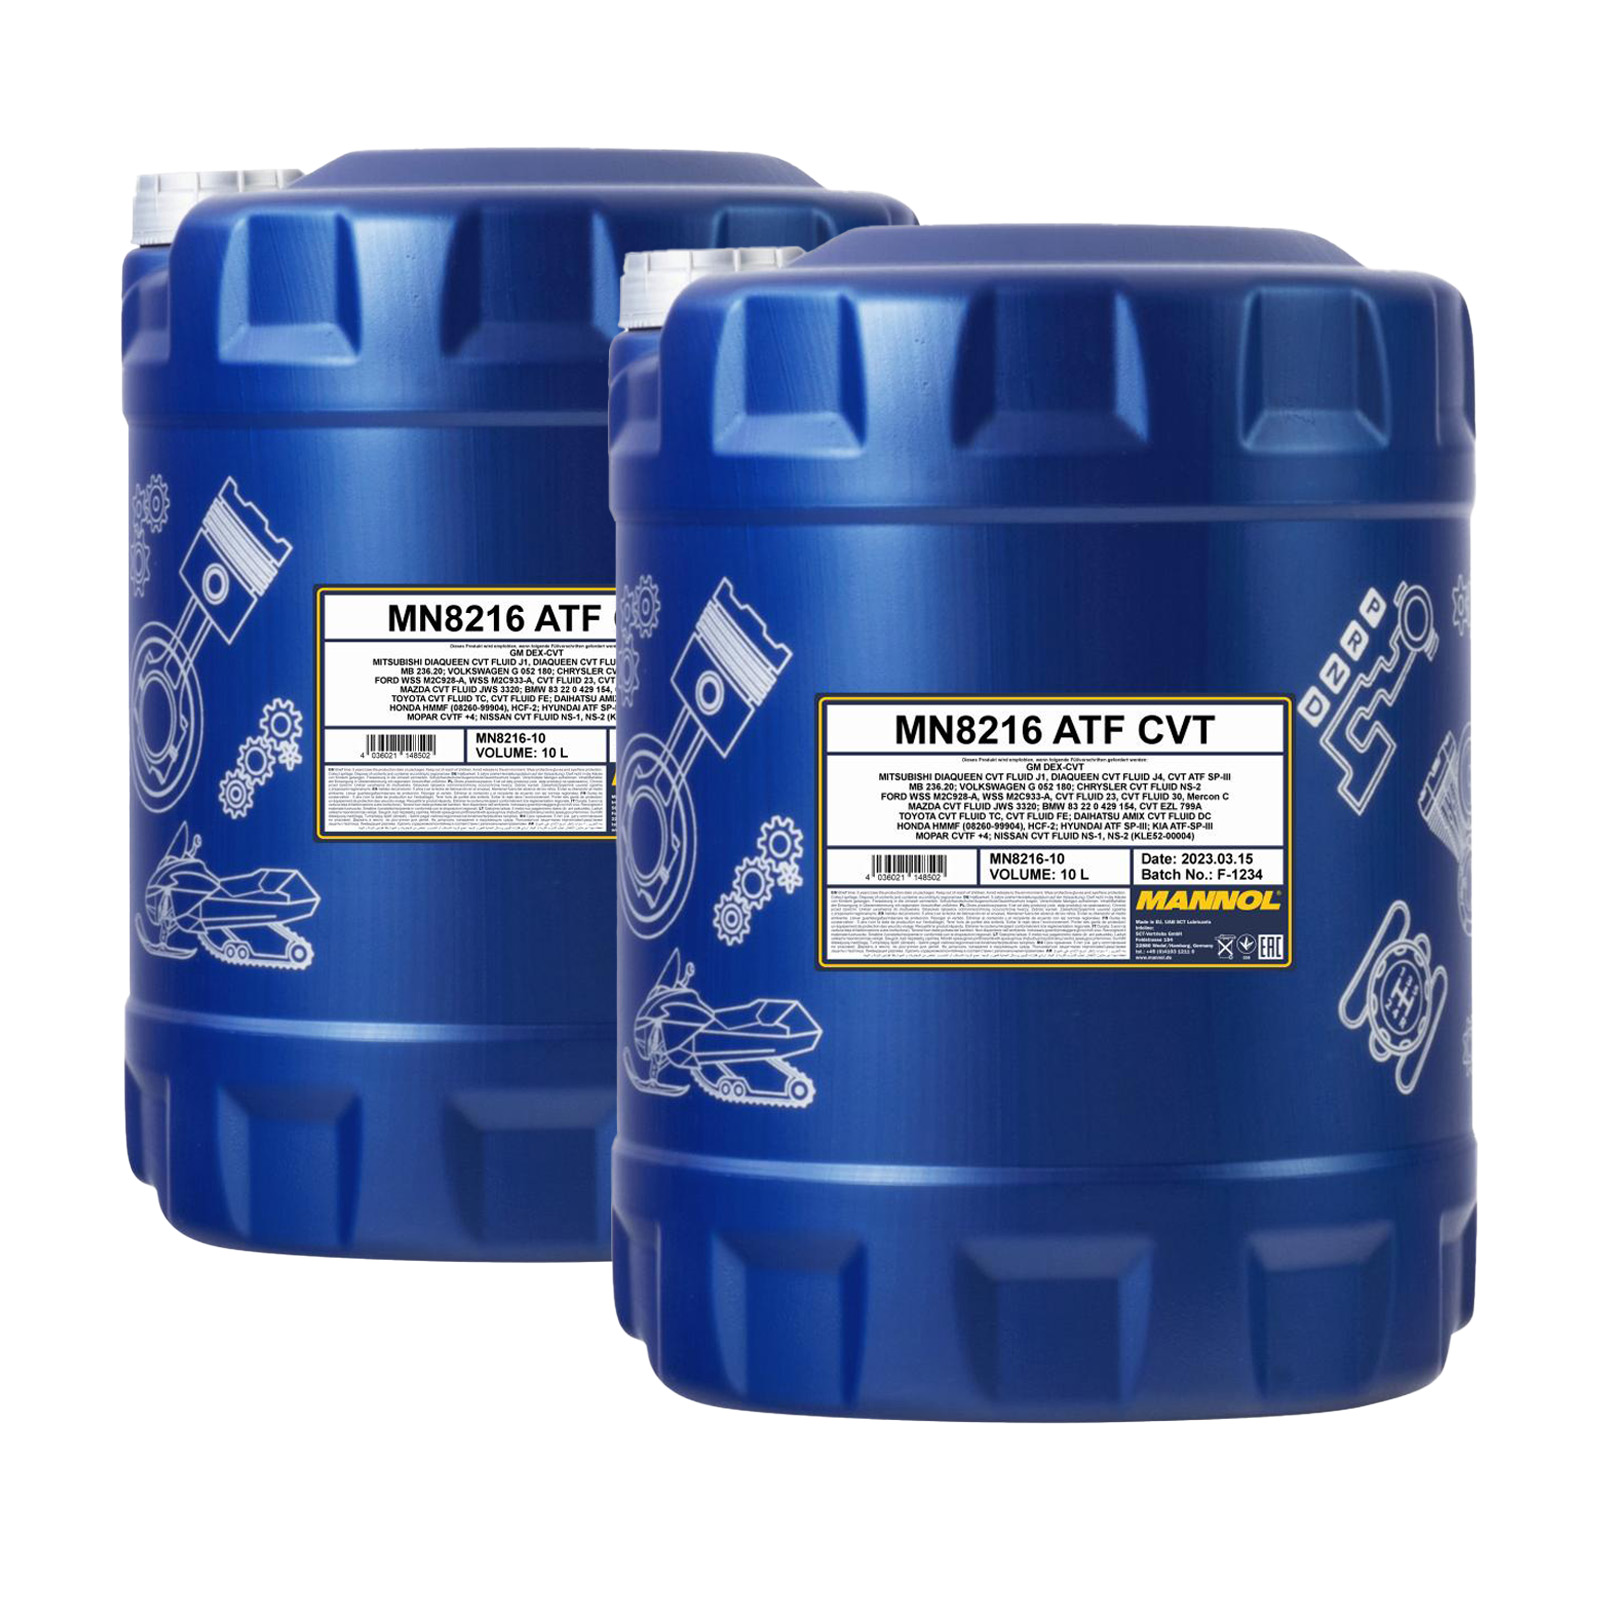 20 Liter (2x10) MANNOL ATF CVT MN8216-10 synthetisches Getriebeöl für CVT